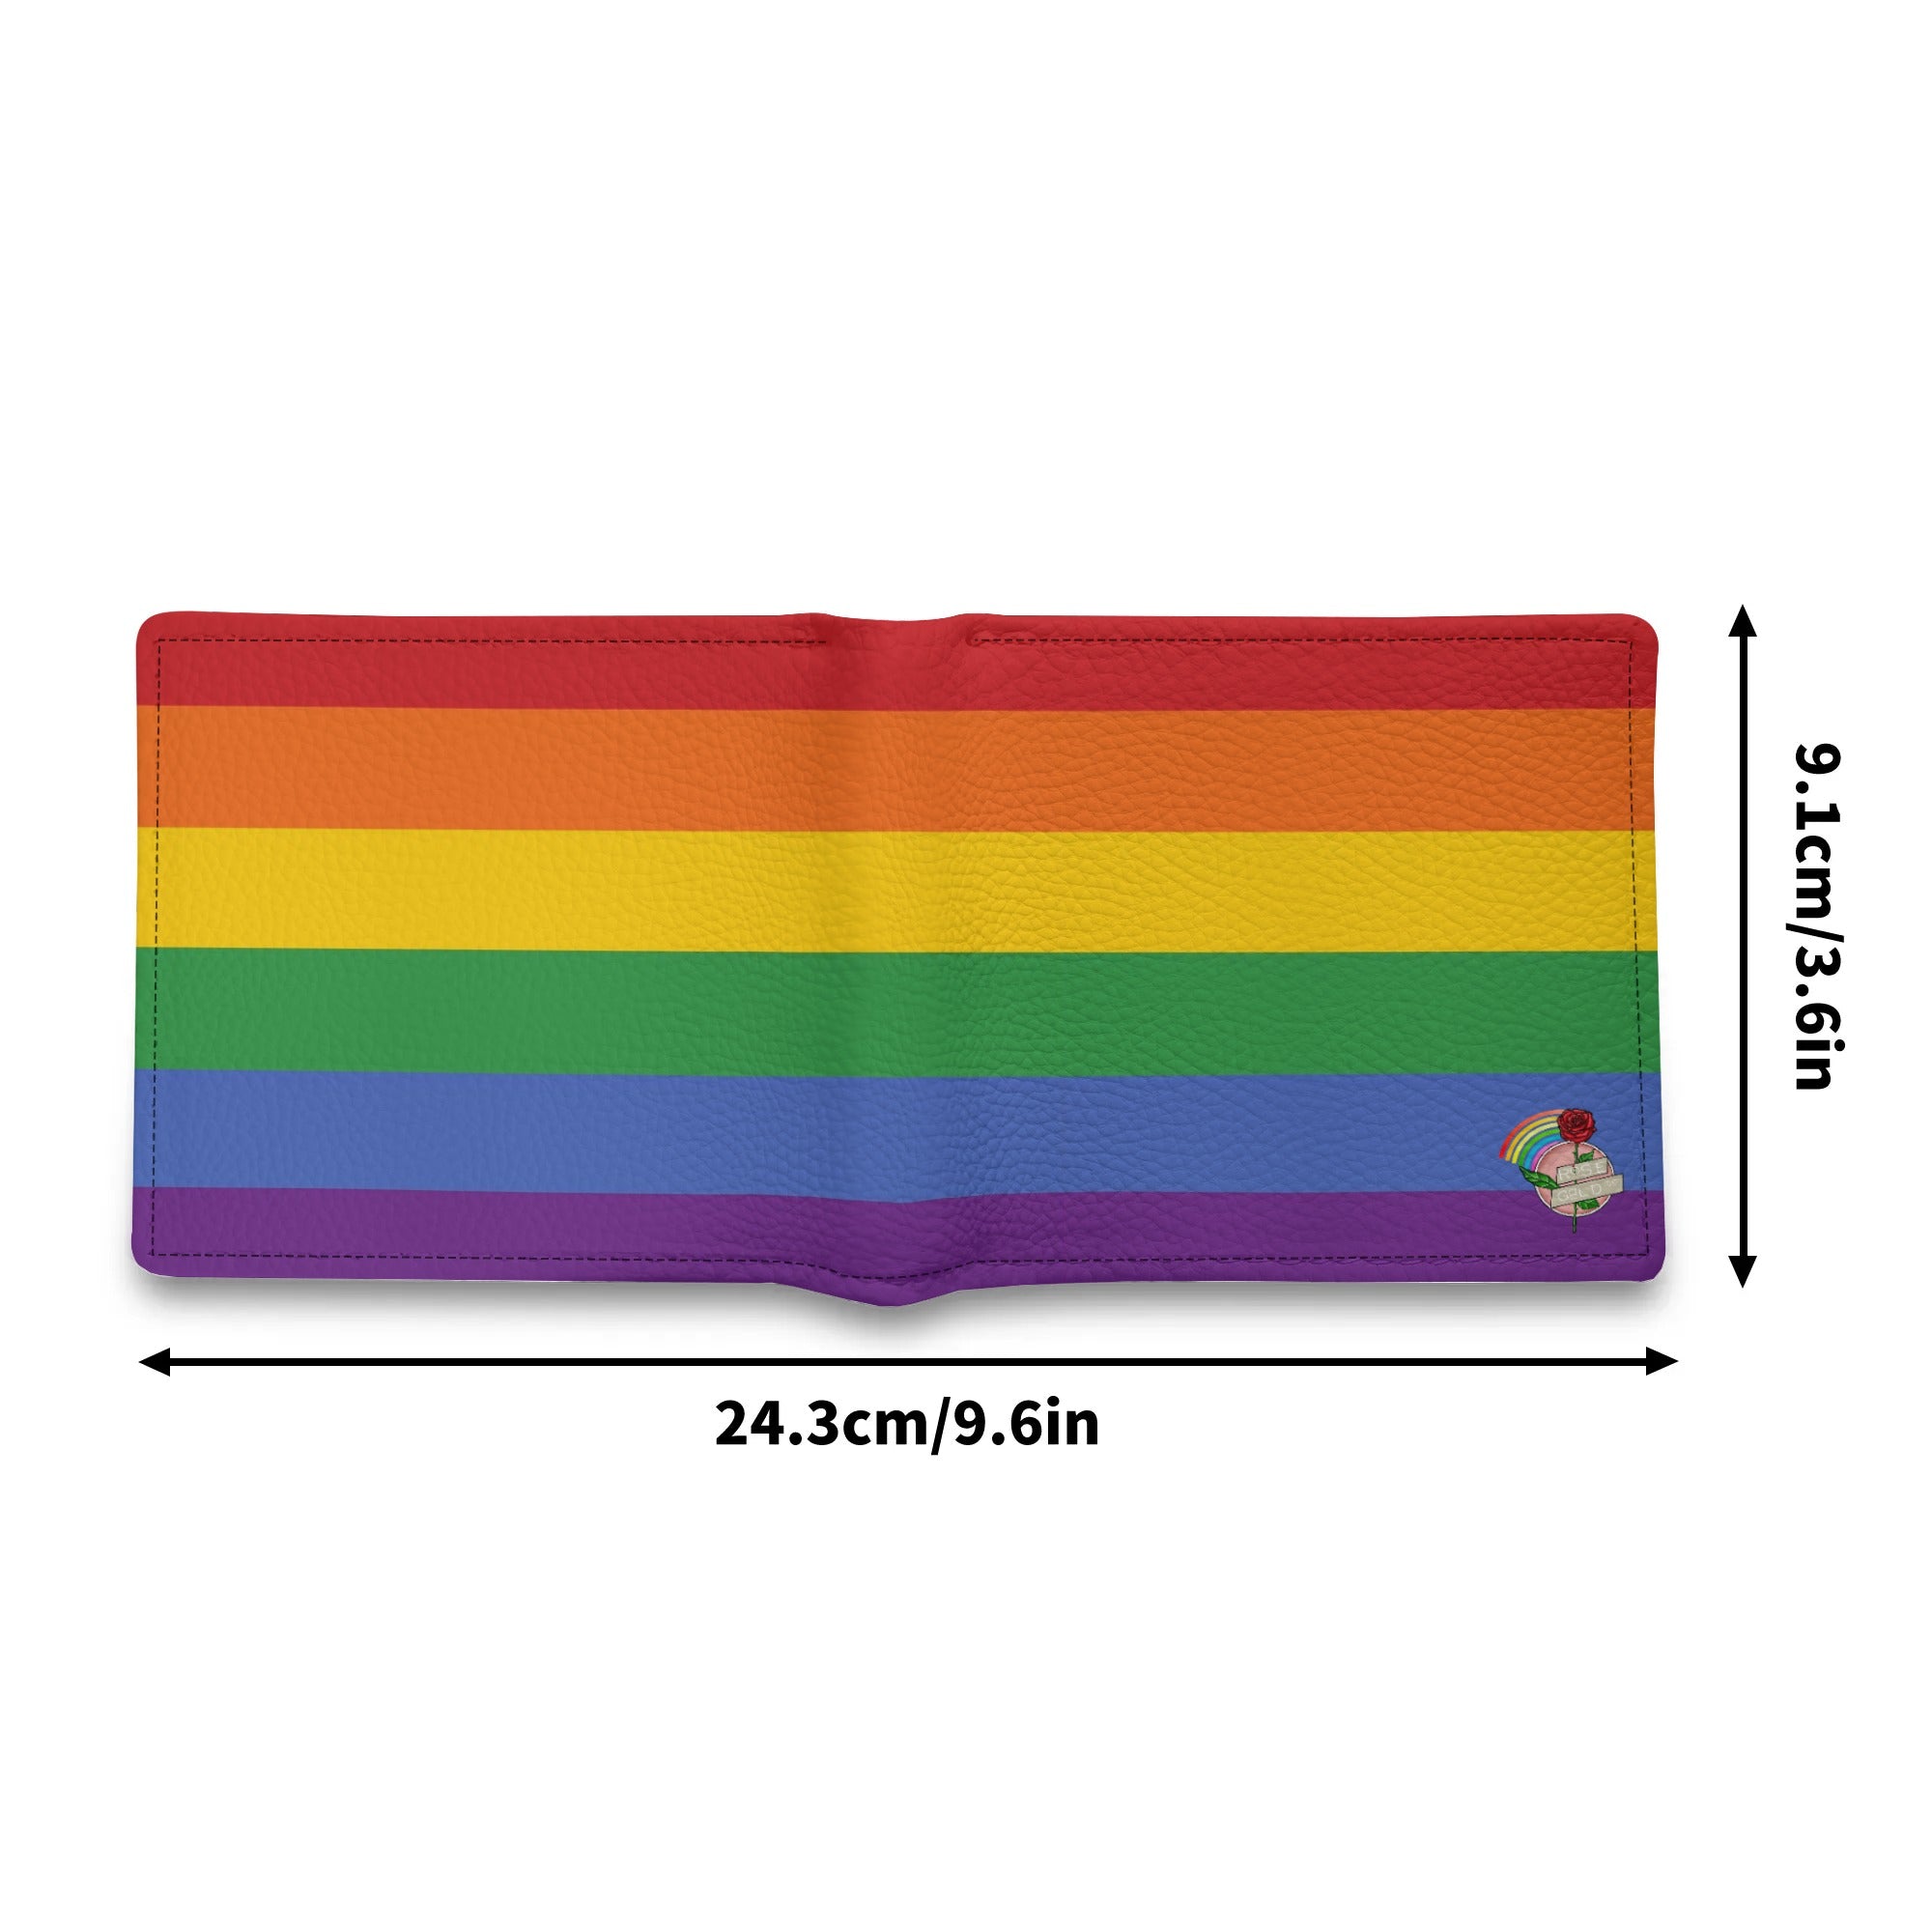 Rainbow Pride Flag Minimalist PU Leather Wallet